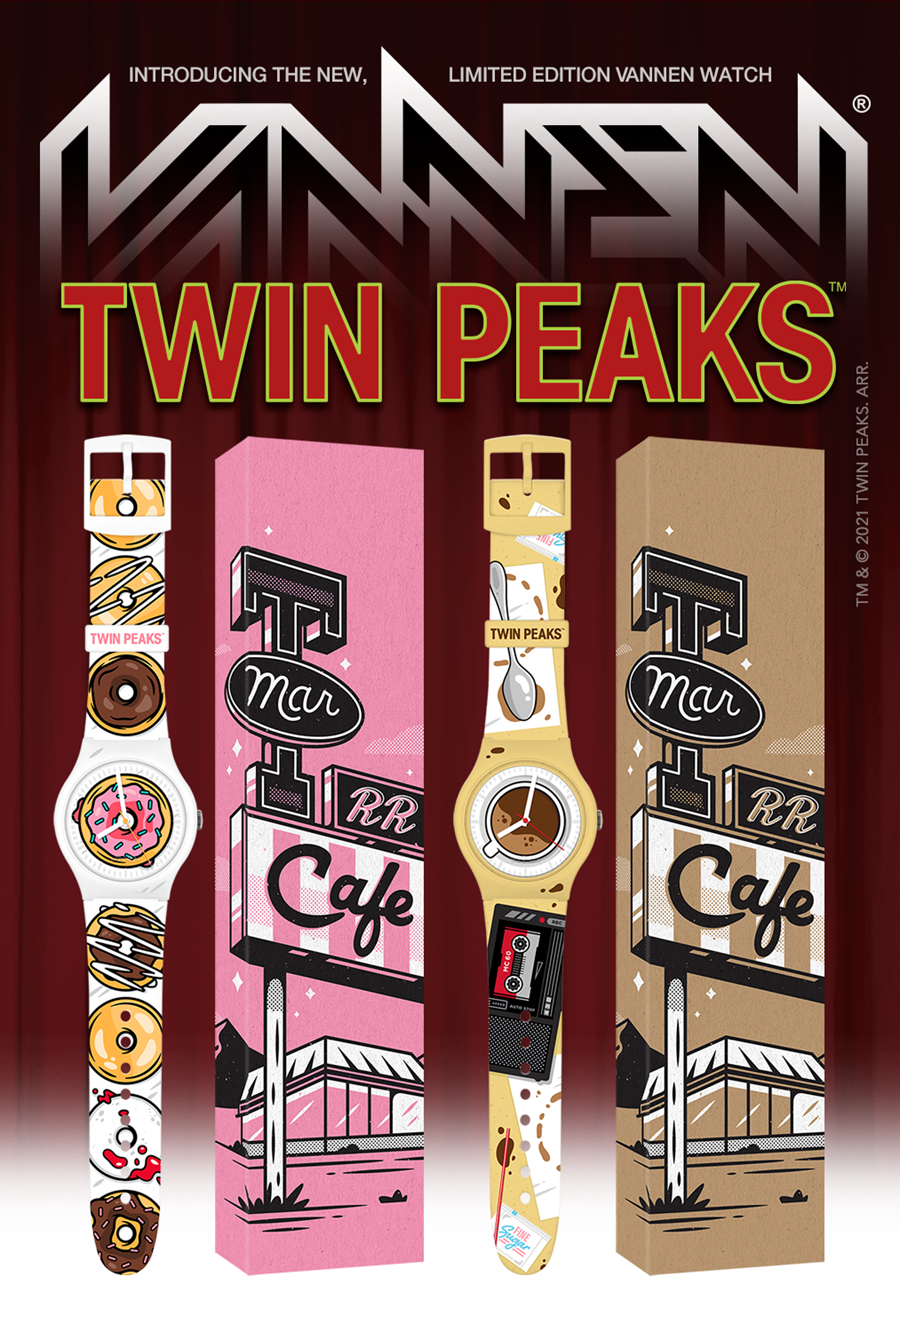 Twin Peaks x Vannen watches